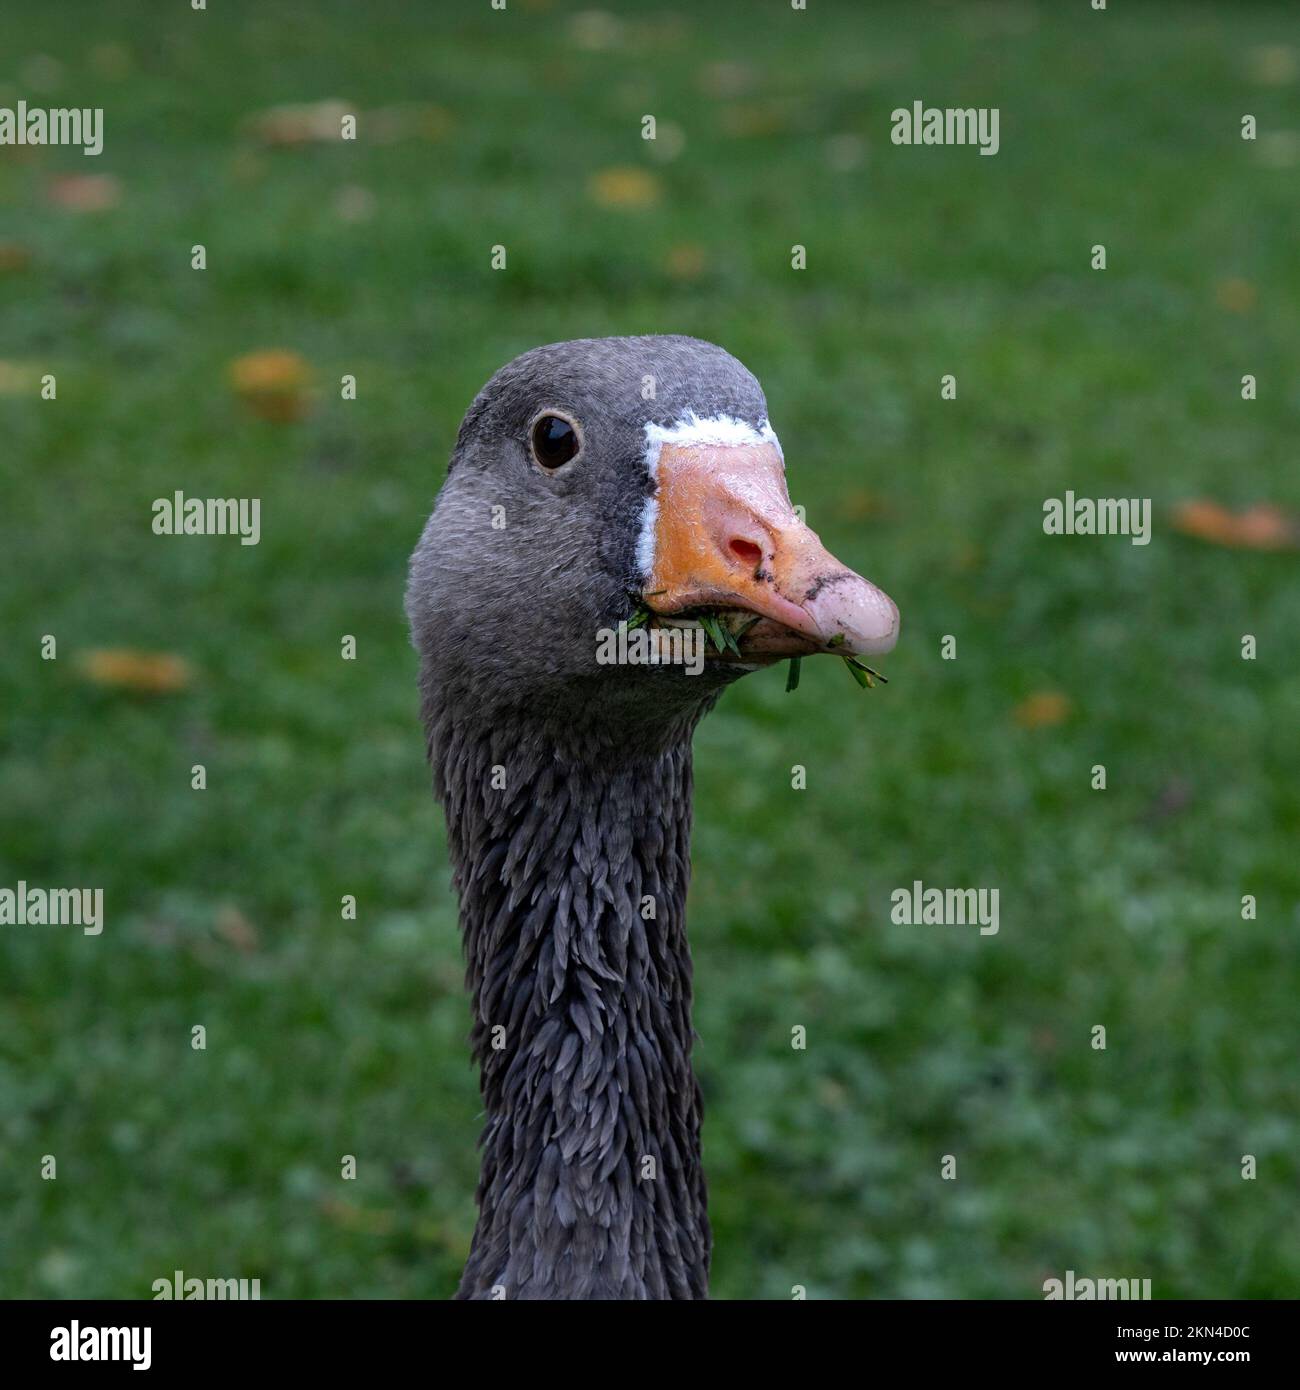 Retrato del ganso del grey (Anser anser) sobre fondo verde Foto de stock